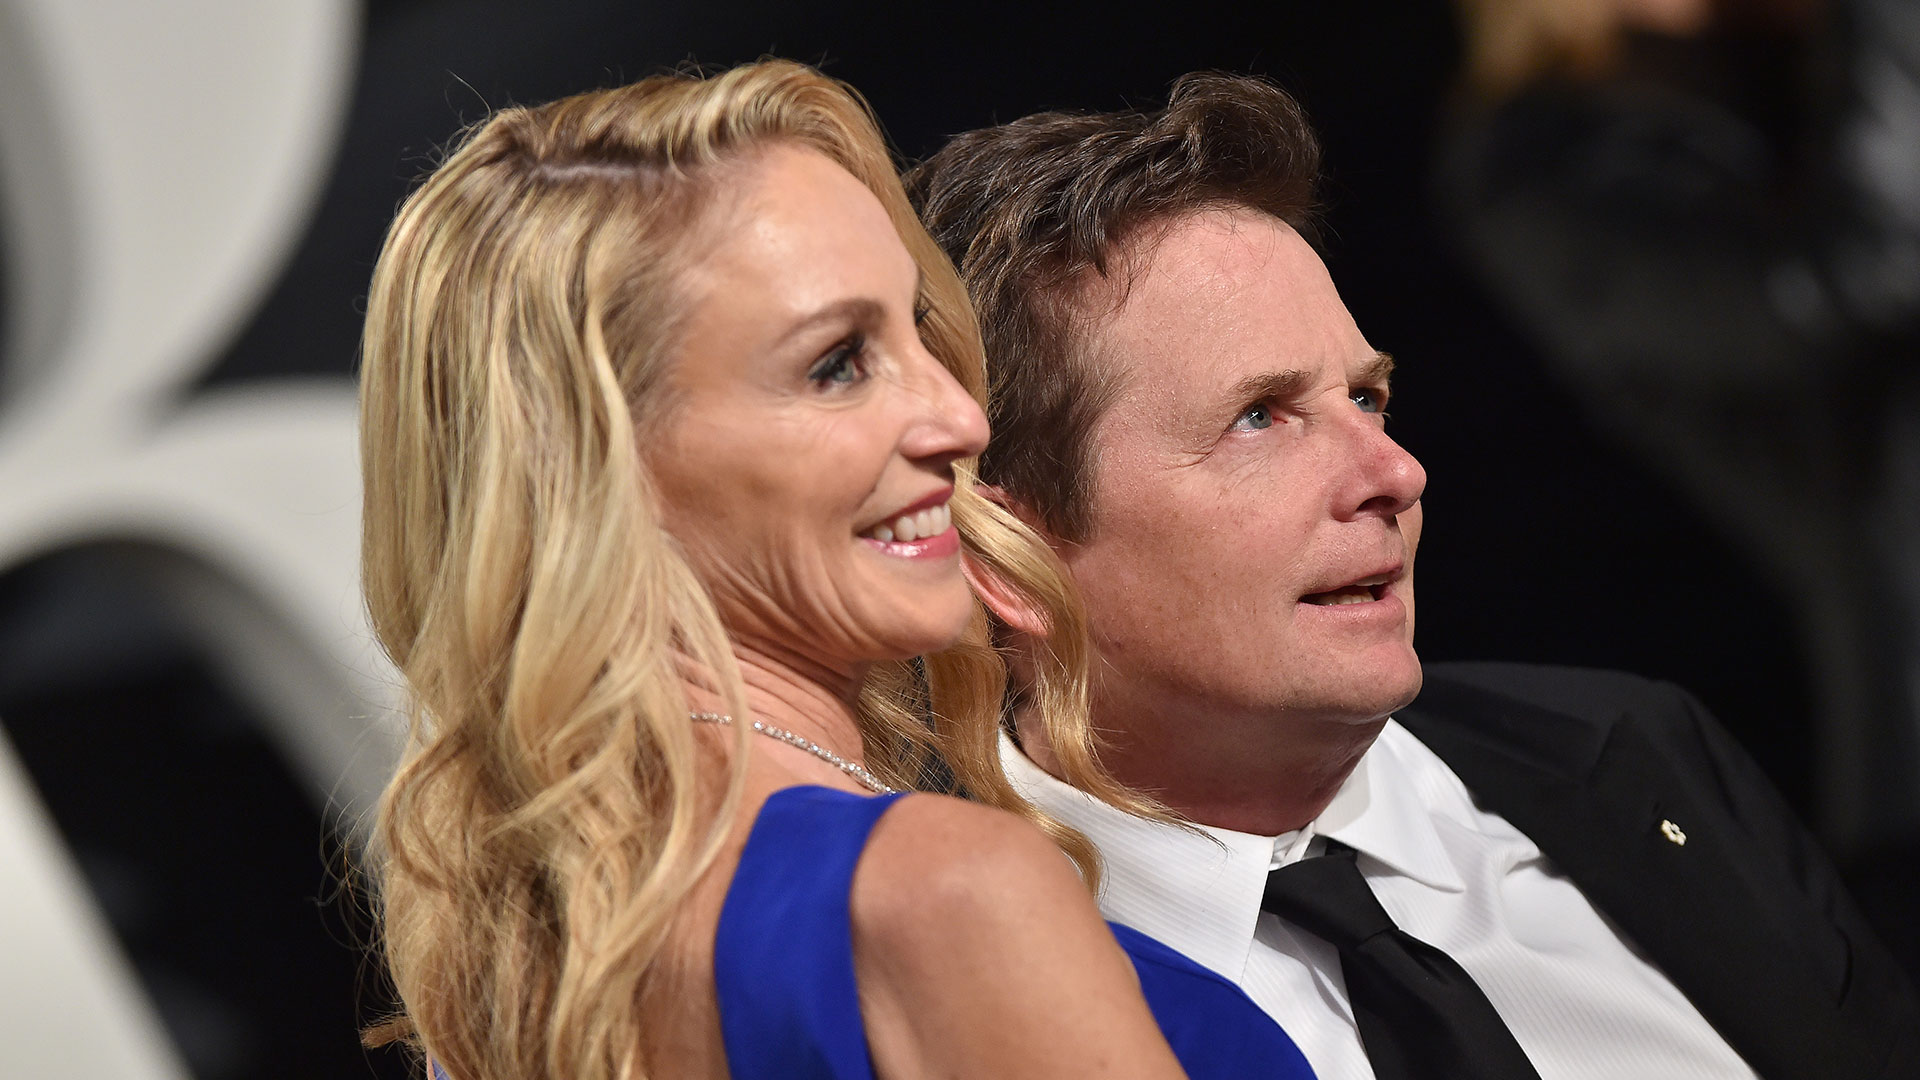 L'attore Michael J. Fox con sua moglie Tracy Pollan al party di Vanity Fair organizzato per gli Oscar 2017. (Foto di Axelle/Bauer-Griffin/FilmMagic)